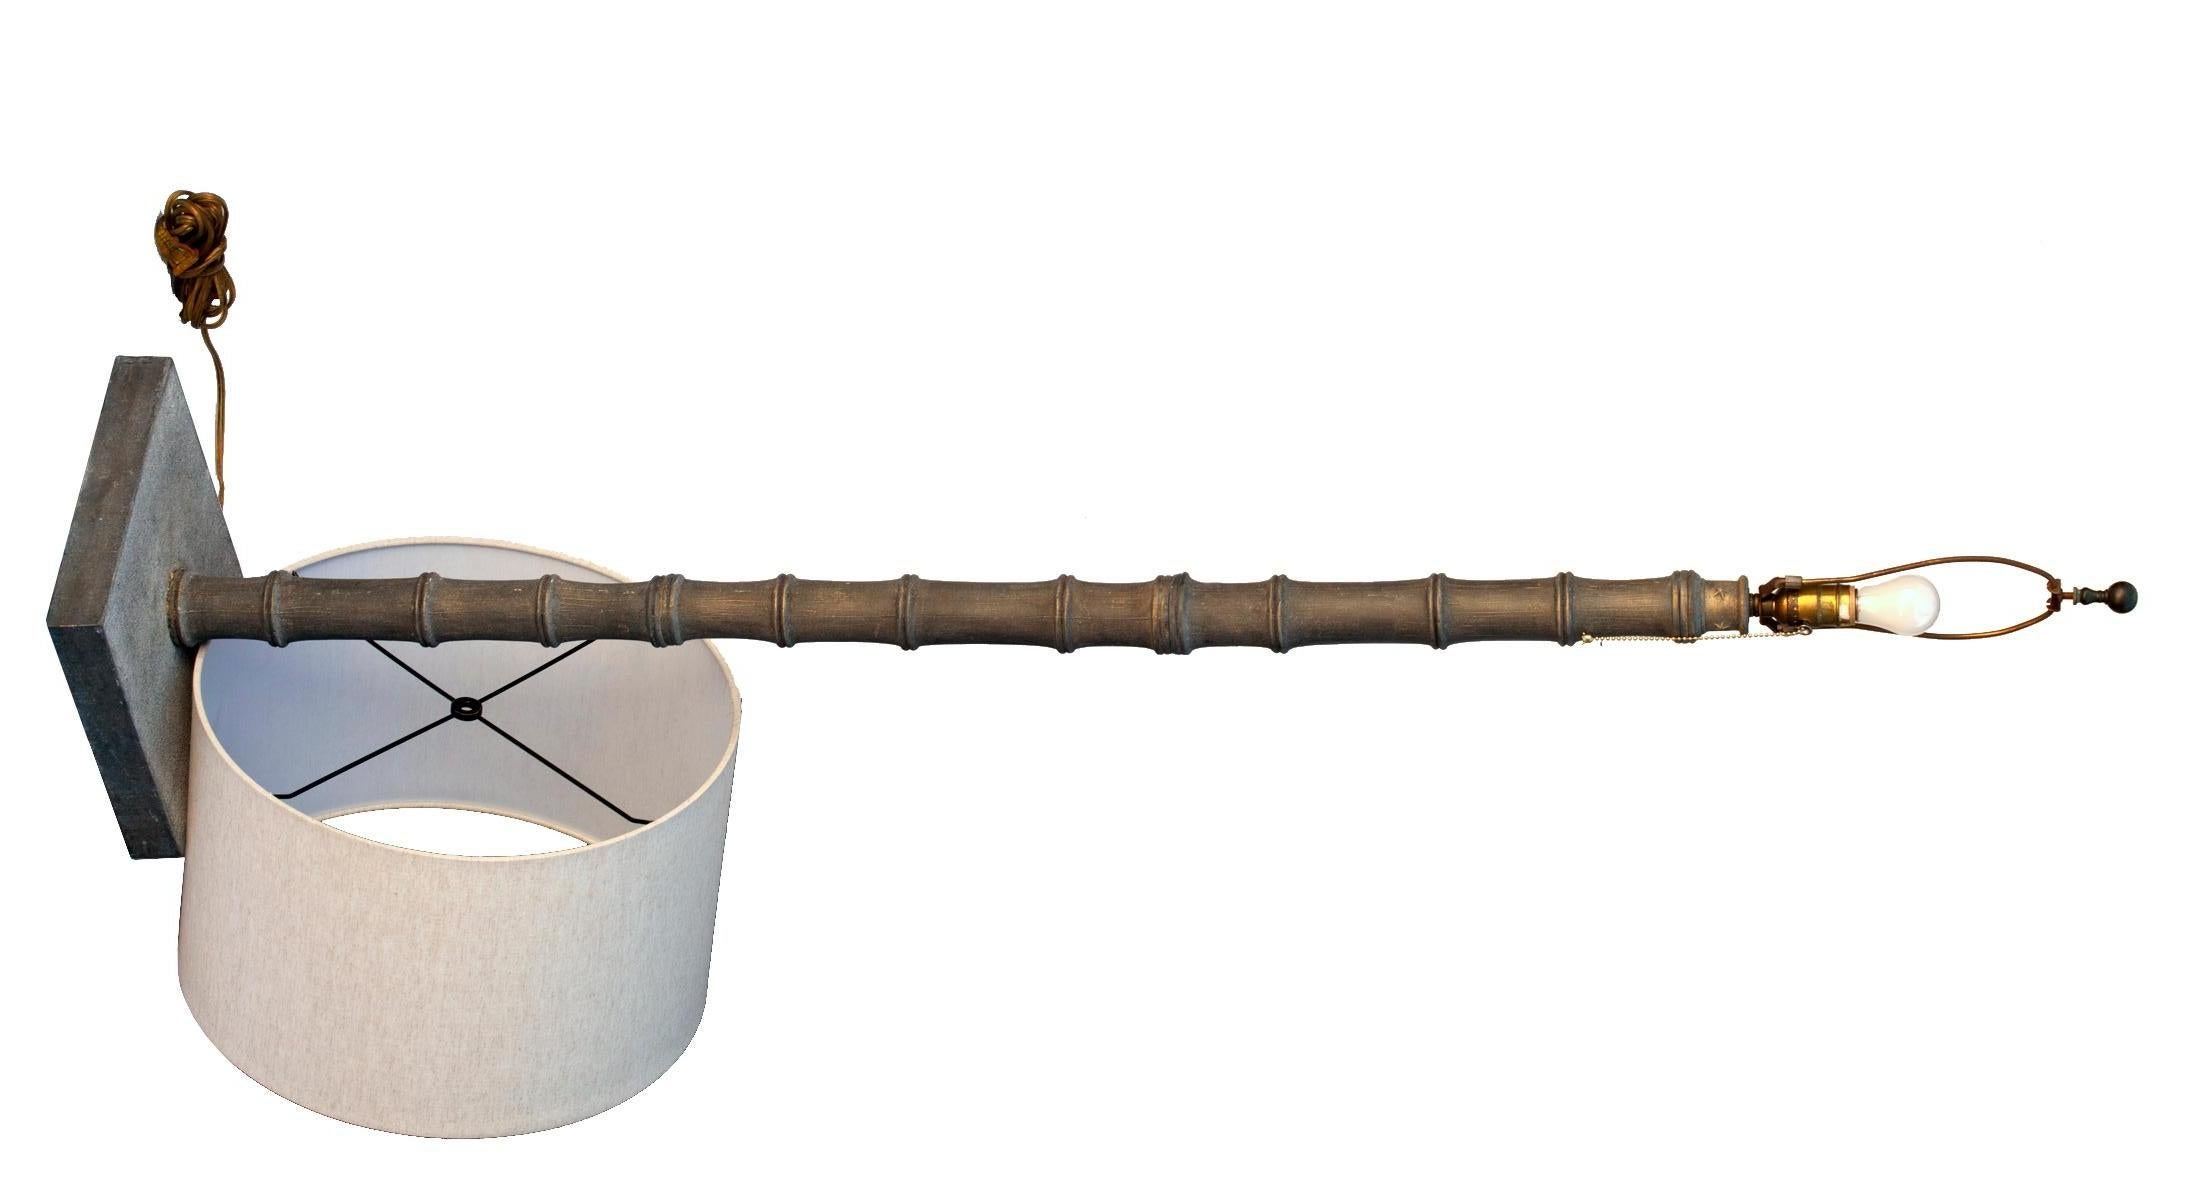 Des éléments métalliques empilés en finition bronze patiné suivent la forme du bambou. L'abat-jour, un nouveau tonneau en lin.
La base est surmontée d'une rangée d'étoiles à 5 branches entourant la rive supérieure empilée du 